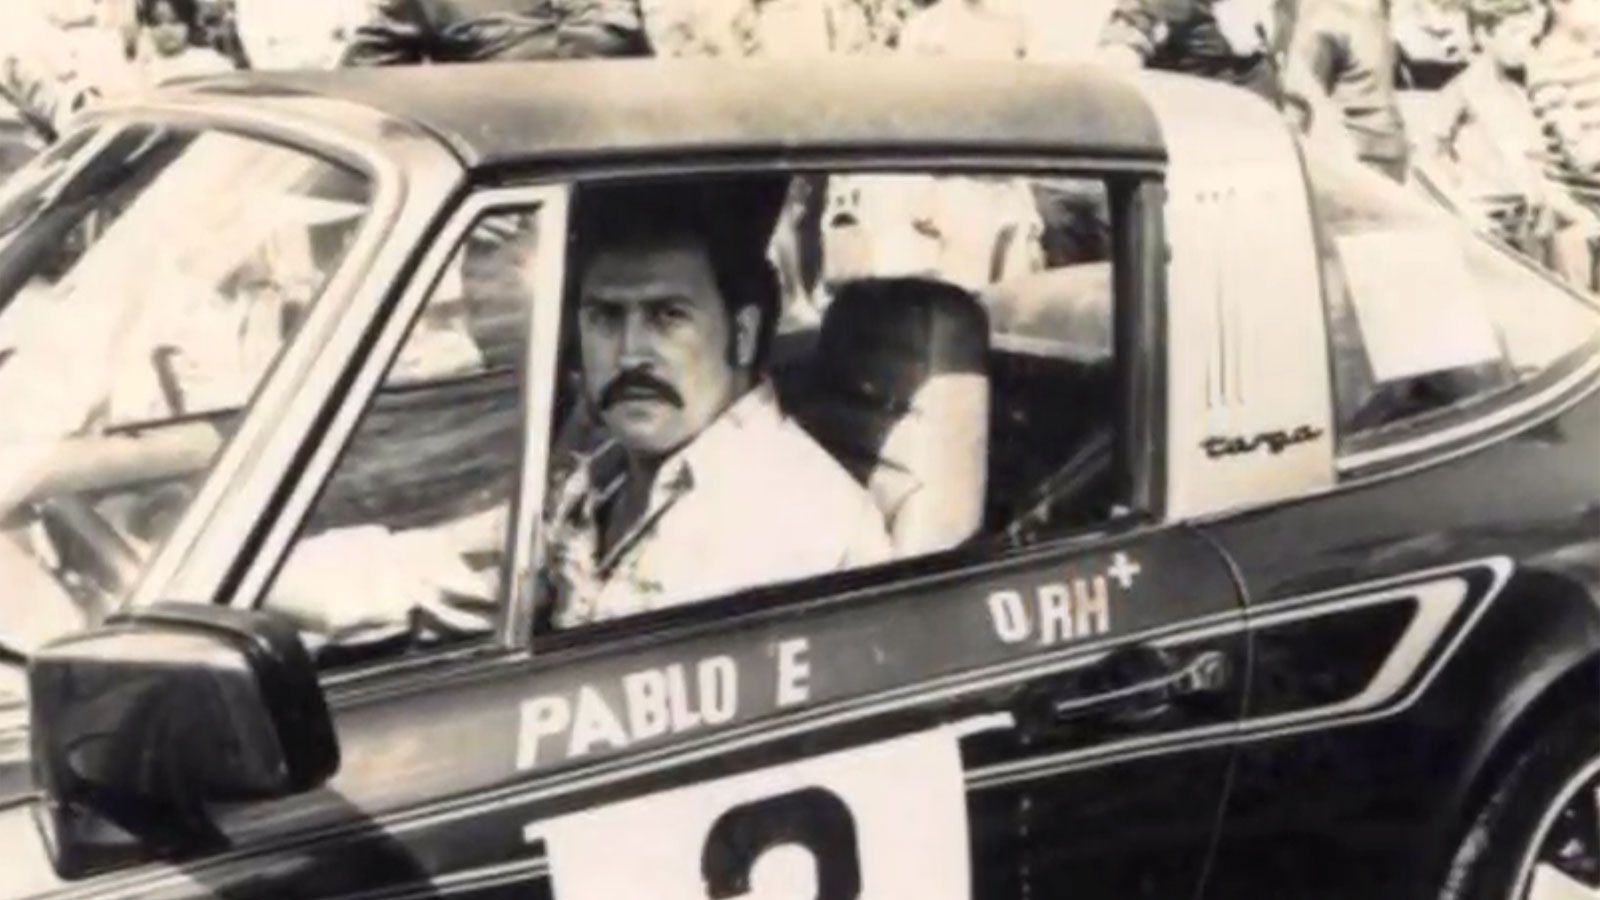 Ini Dia Mobil Balap Mewah Milik Pablo Escobar